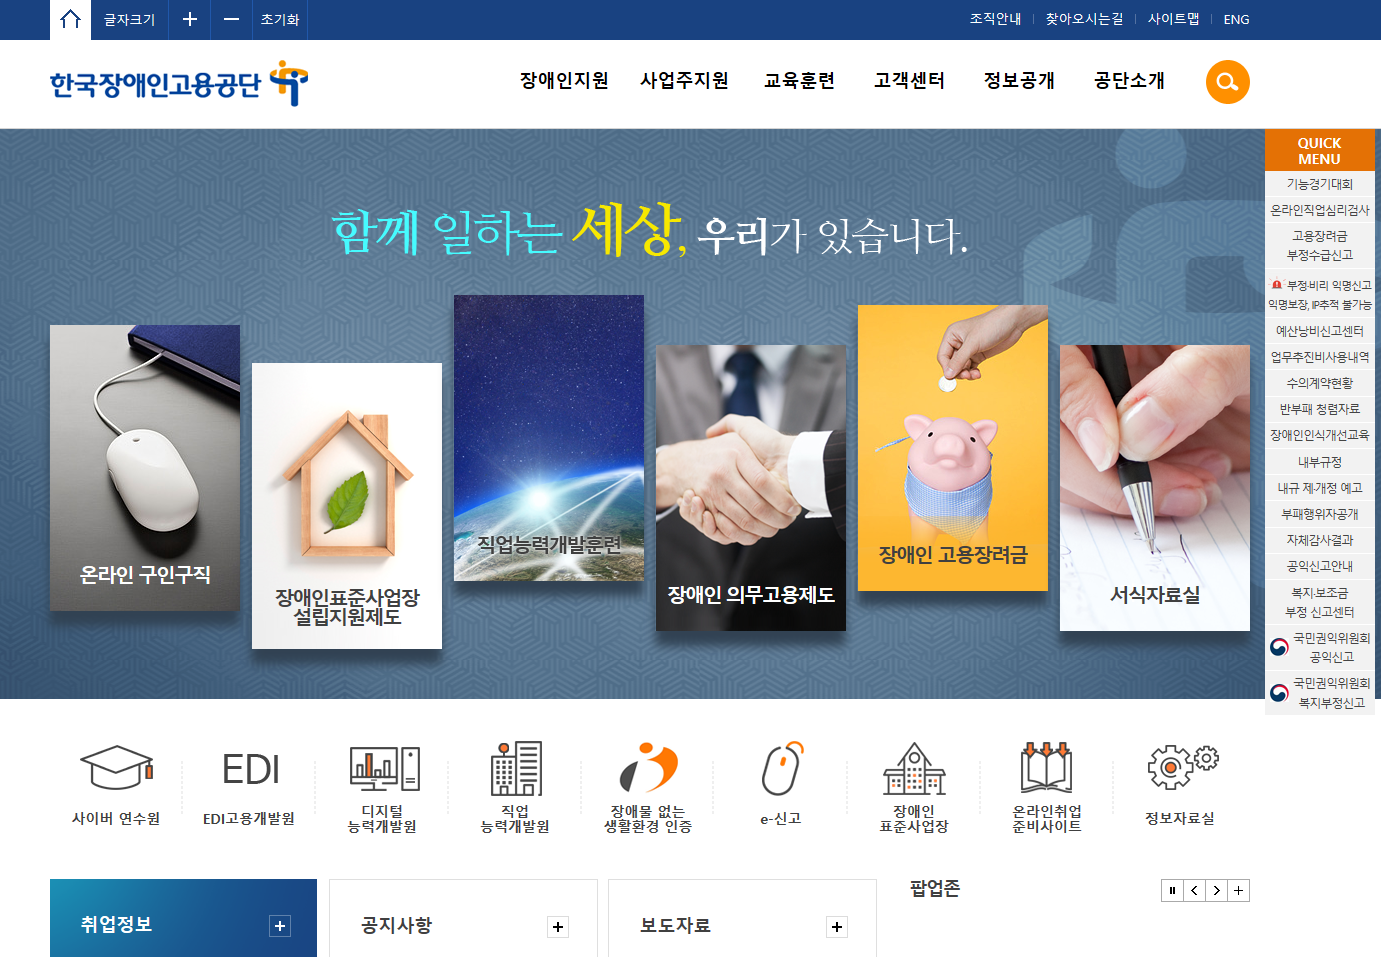 한국장애인고용공단 대표 홈페이지 스크릿샷